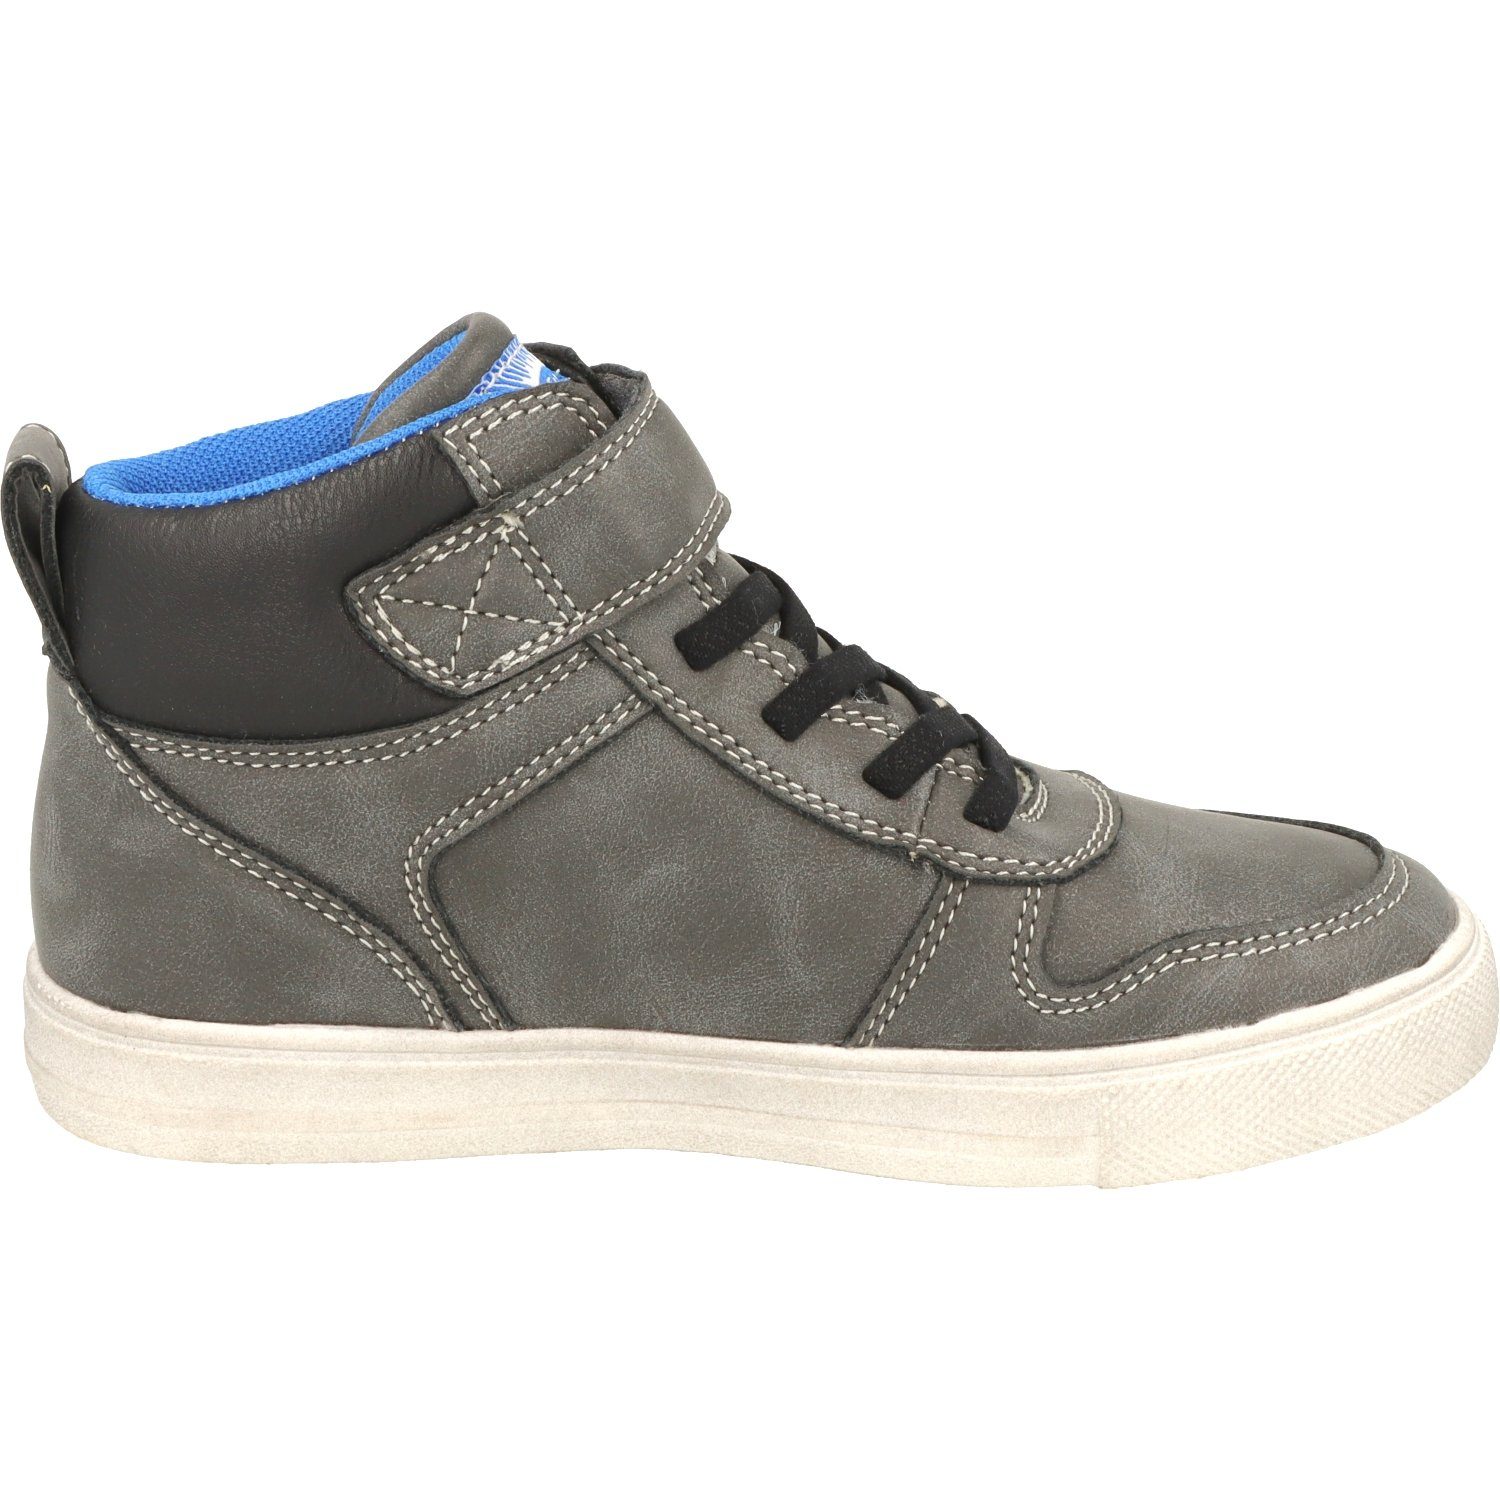 Schuhe Jungen Sneaker Wasserabweisend Hi-Top Dk.Grey Indigo Schnürschuhe 451-074